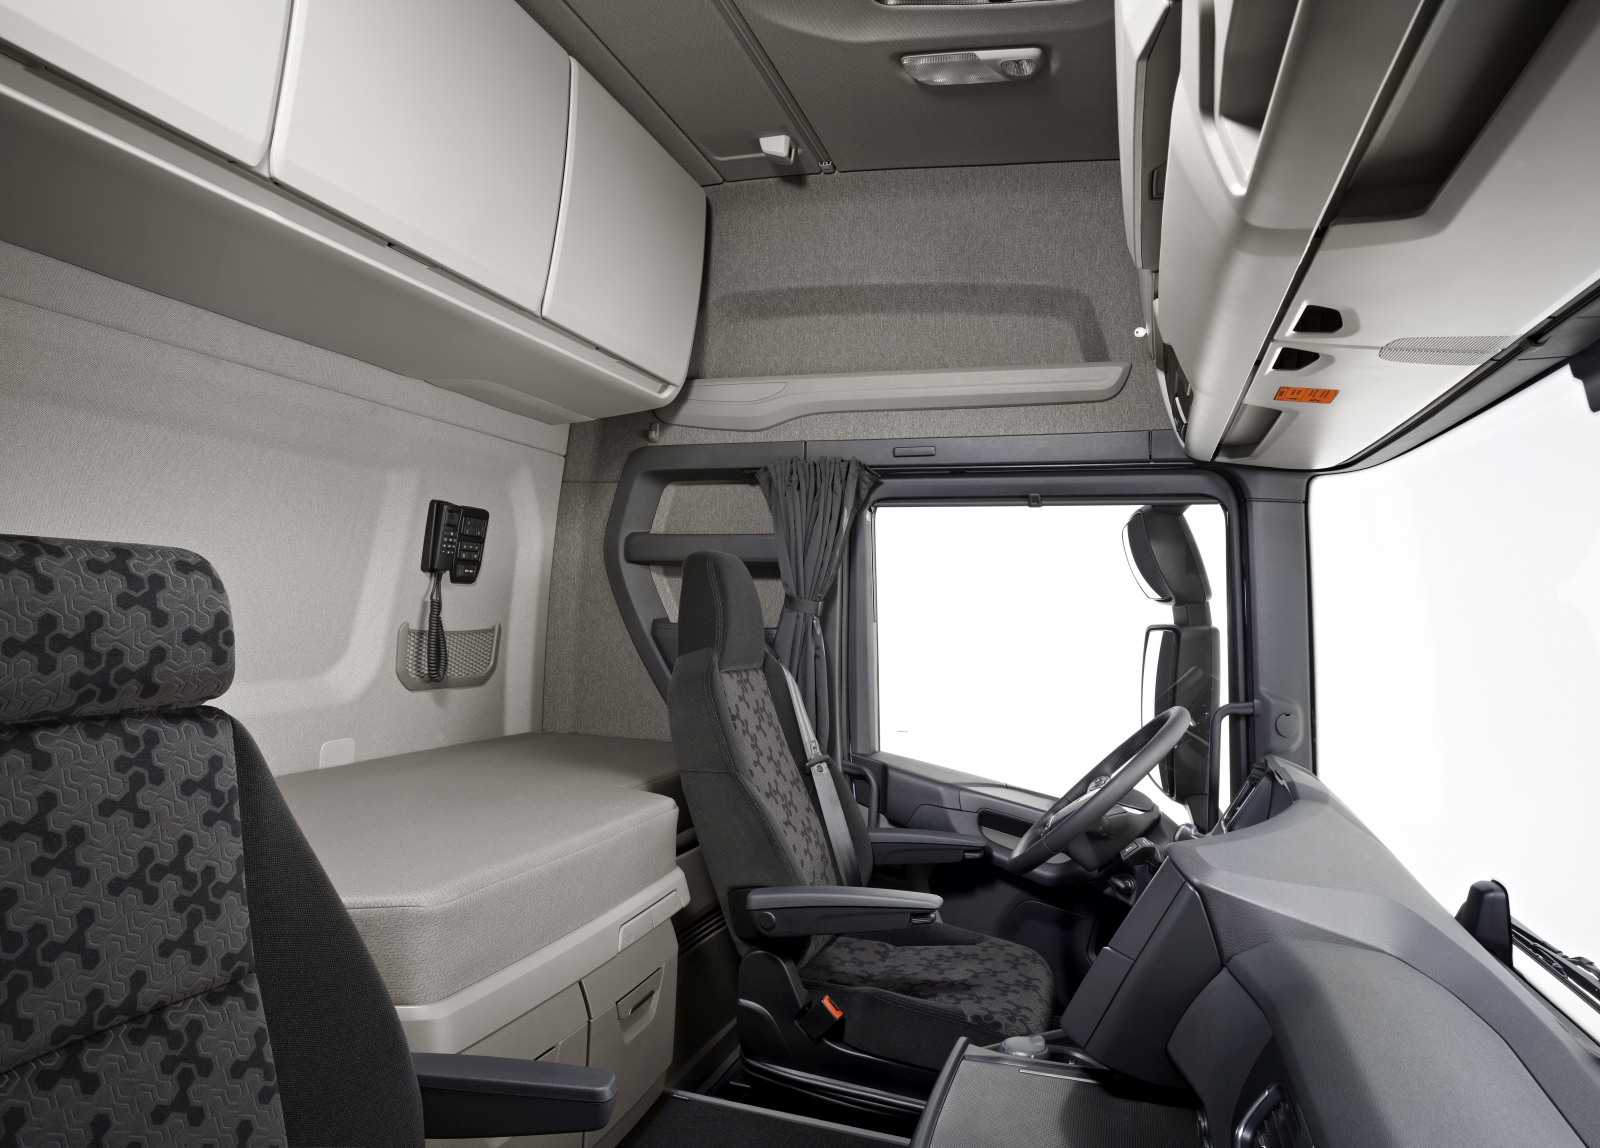 Az új Scania tehergépkocsi-család